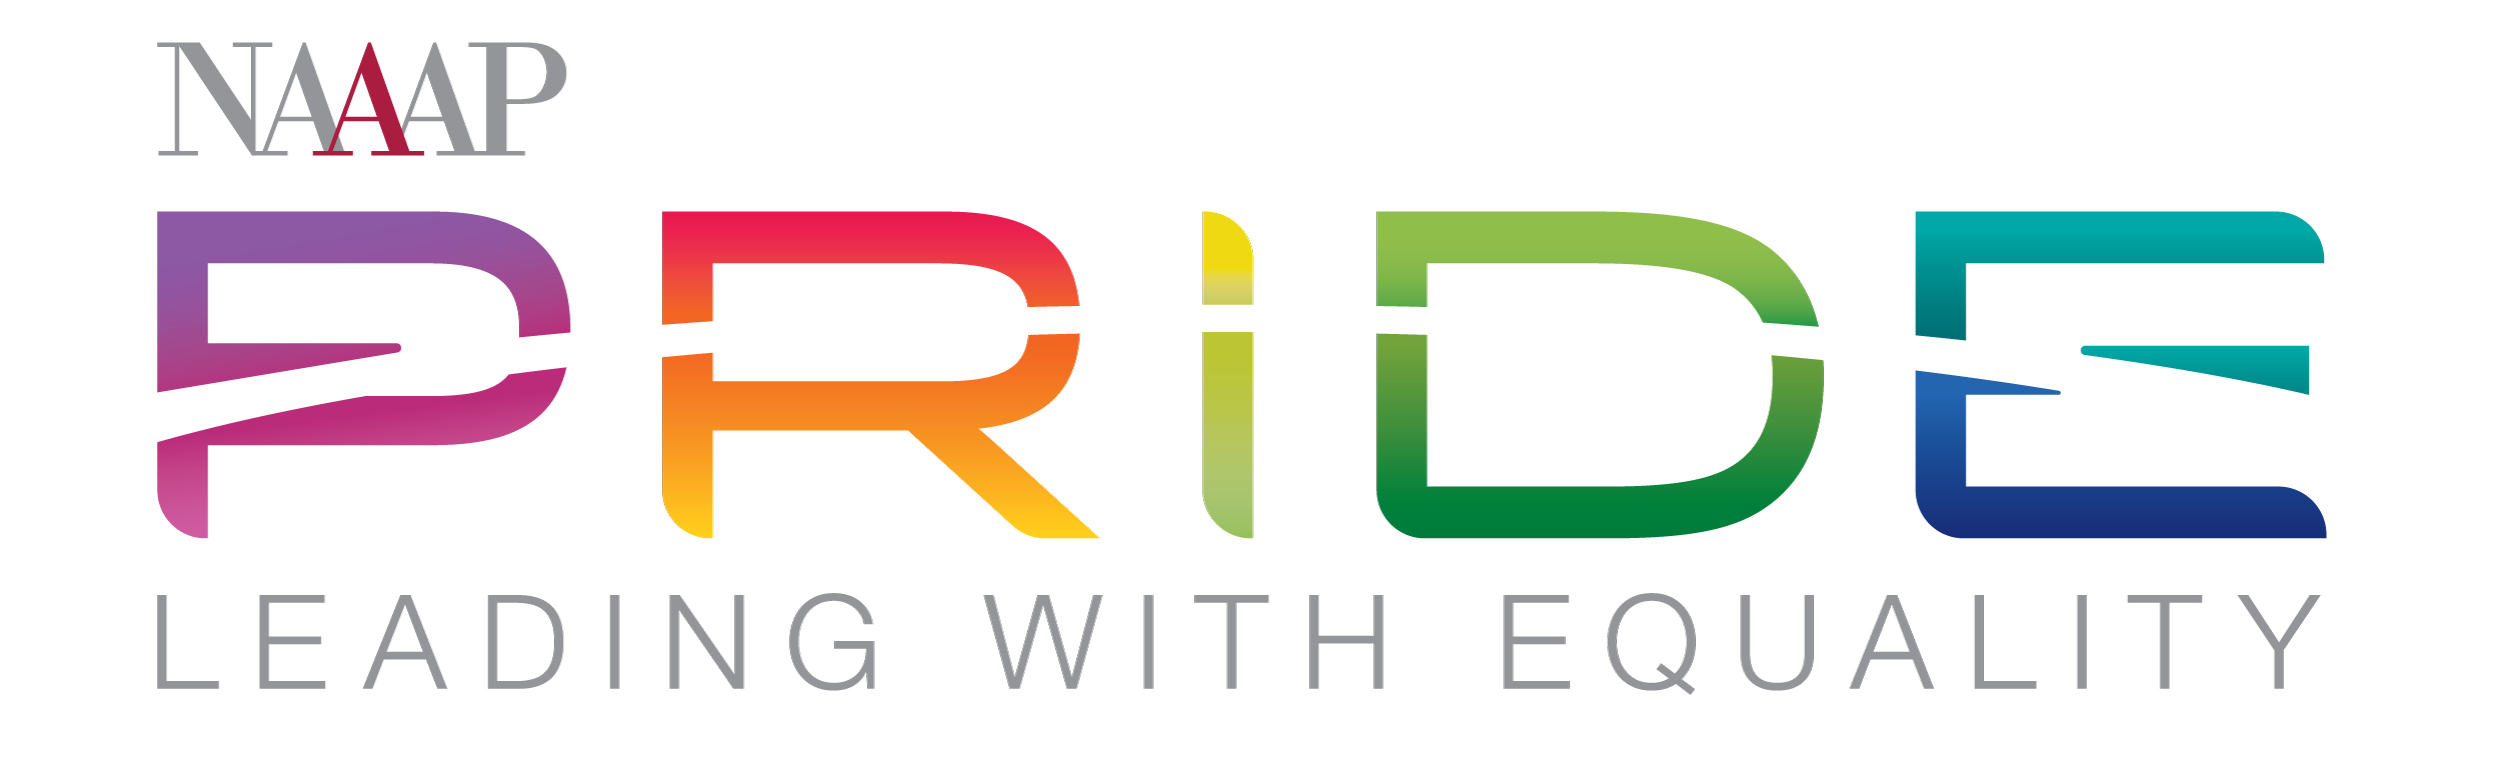 NAAAP Pride Logo